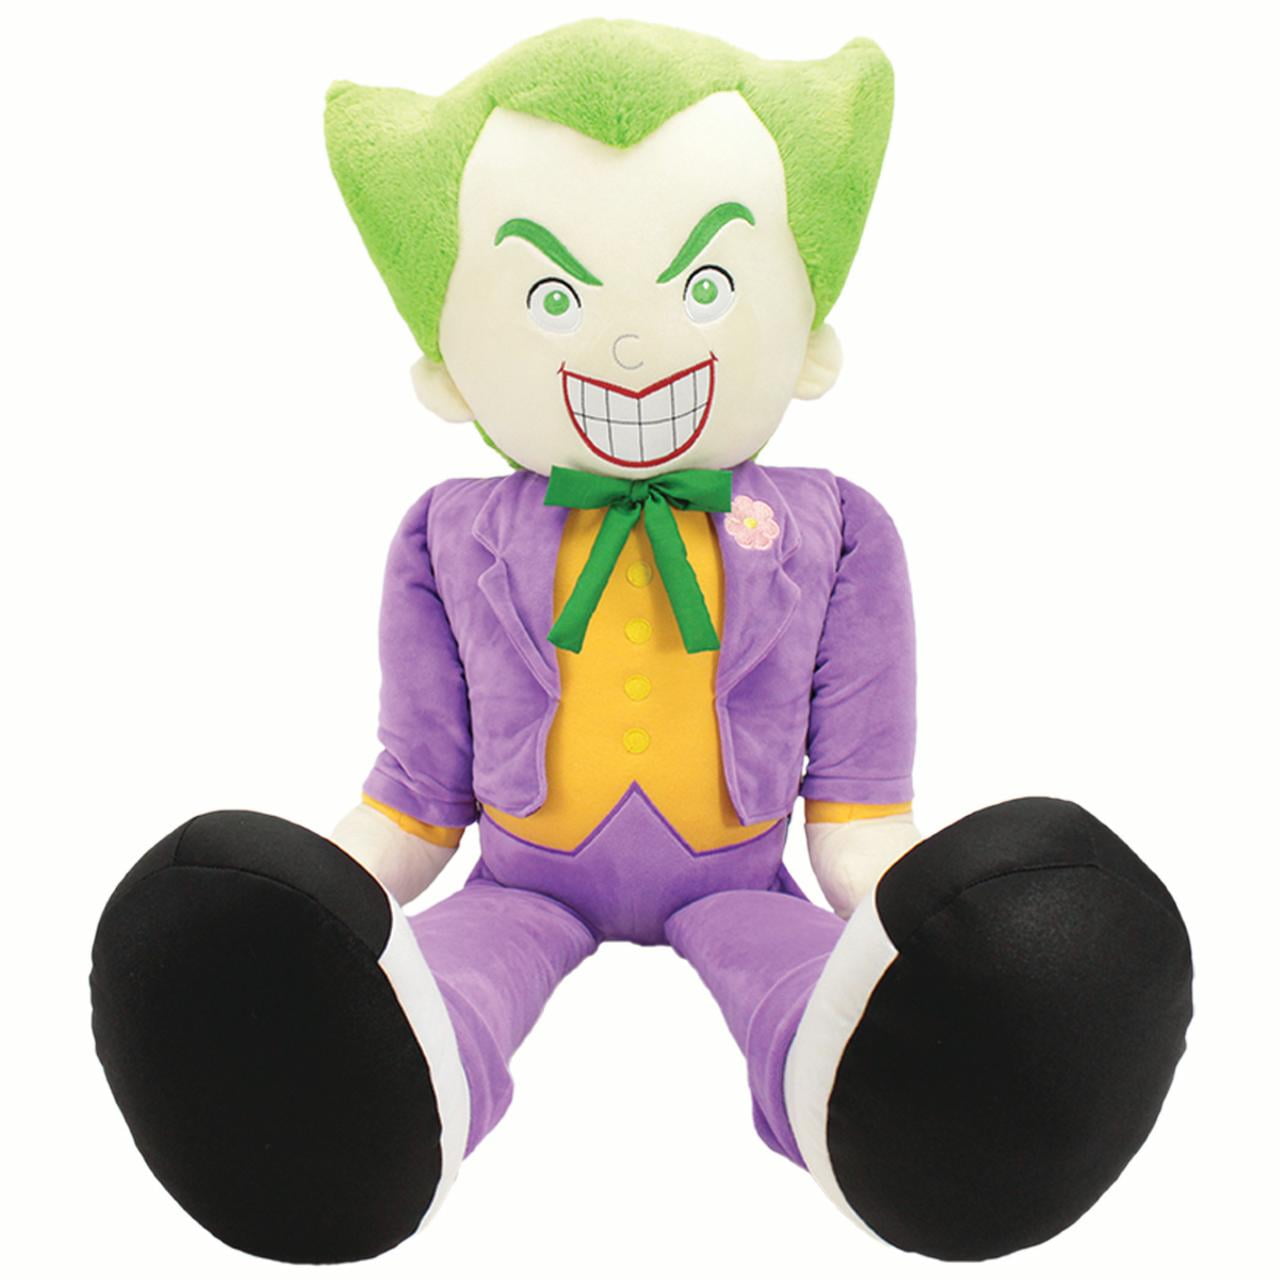 joker stuffed animal